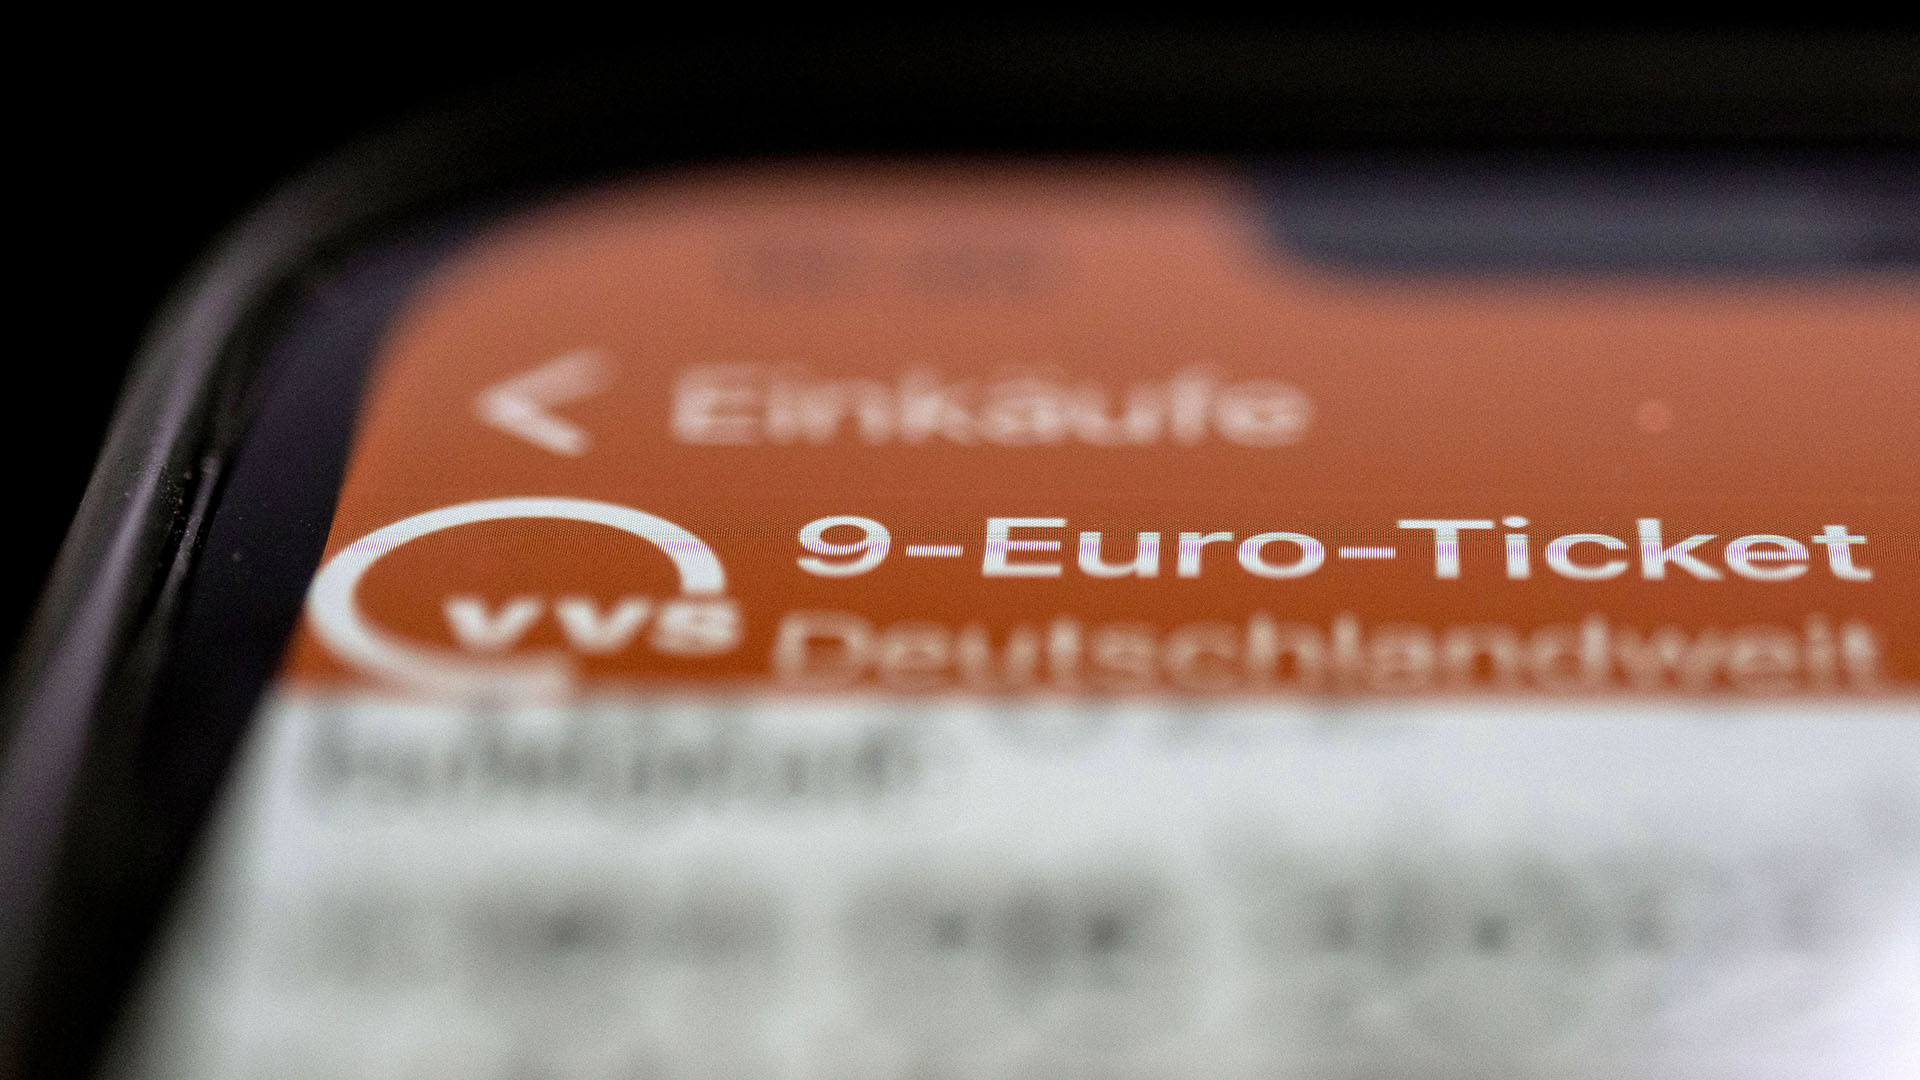 Ein 9-Euro-Ticket des Verkehrs- und Tarifverbund Stuttgart GmbH (VVS) ist auf dem Display eines Smartphones zu sehen.